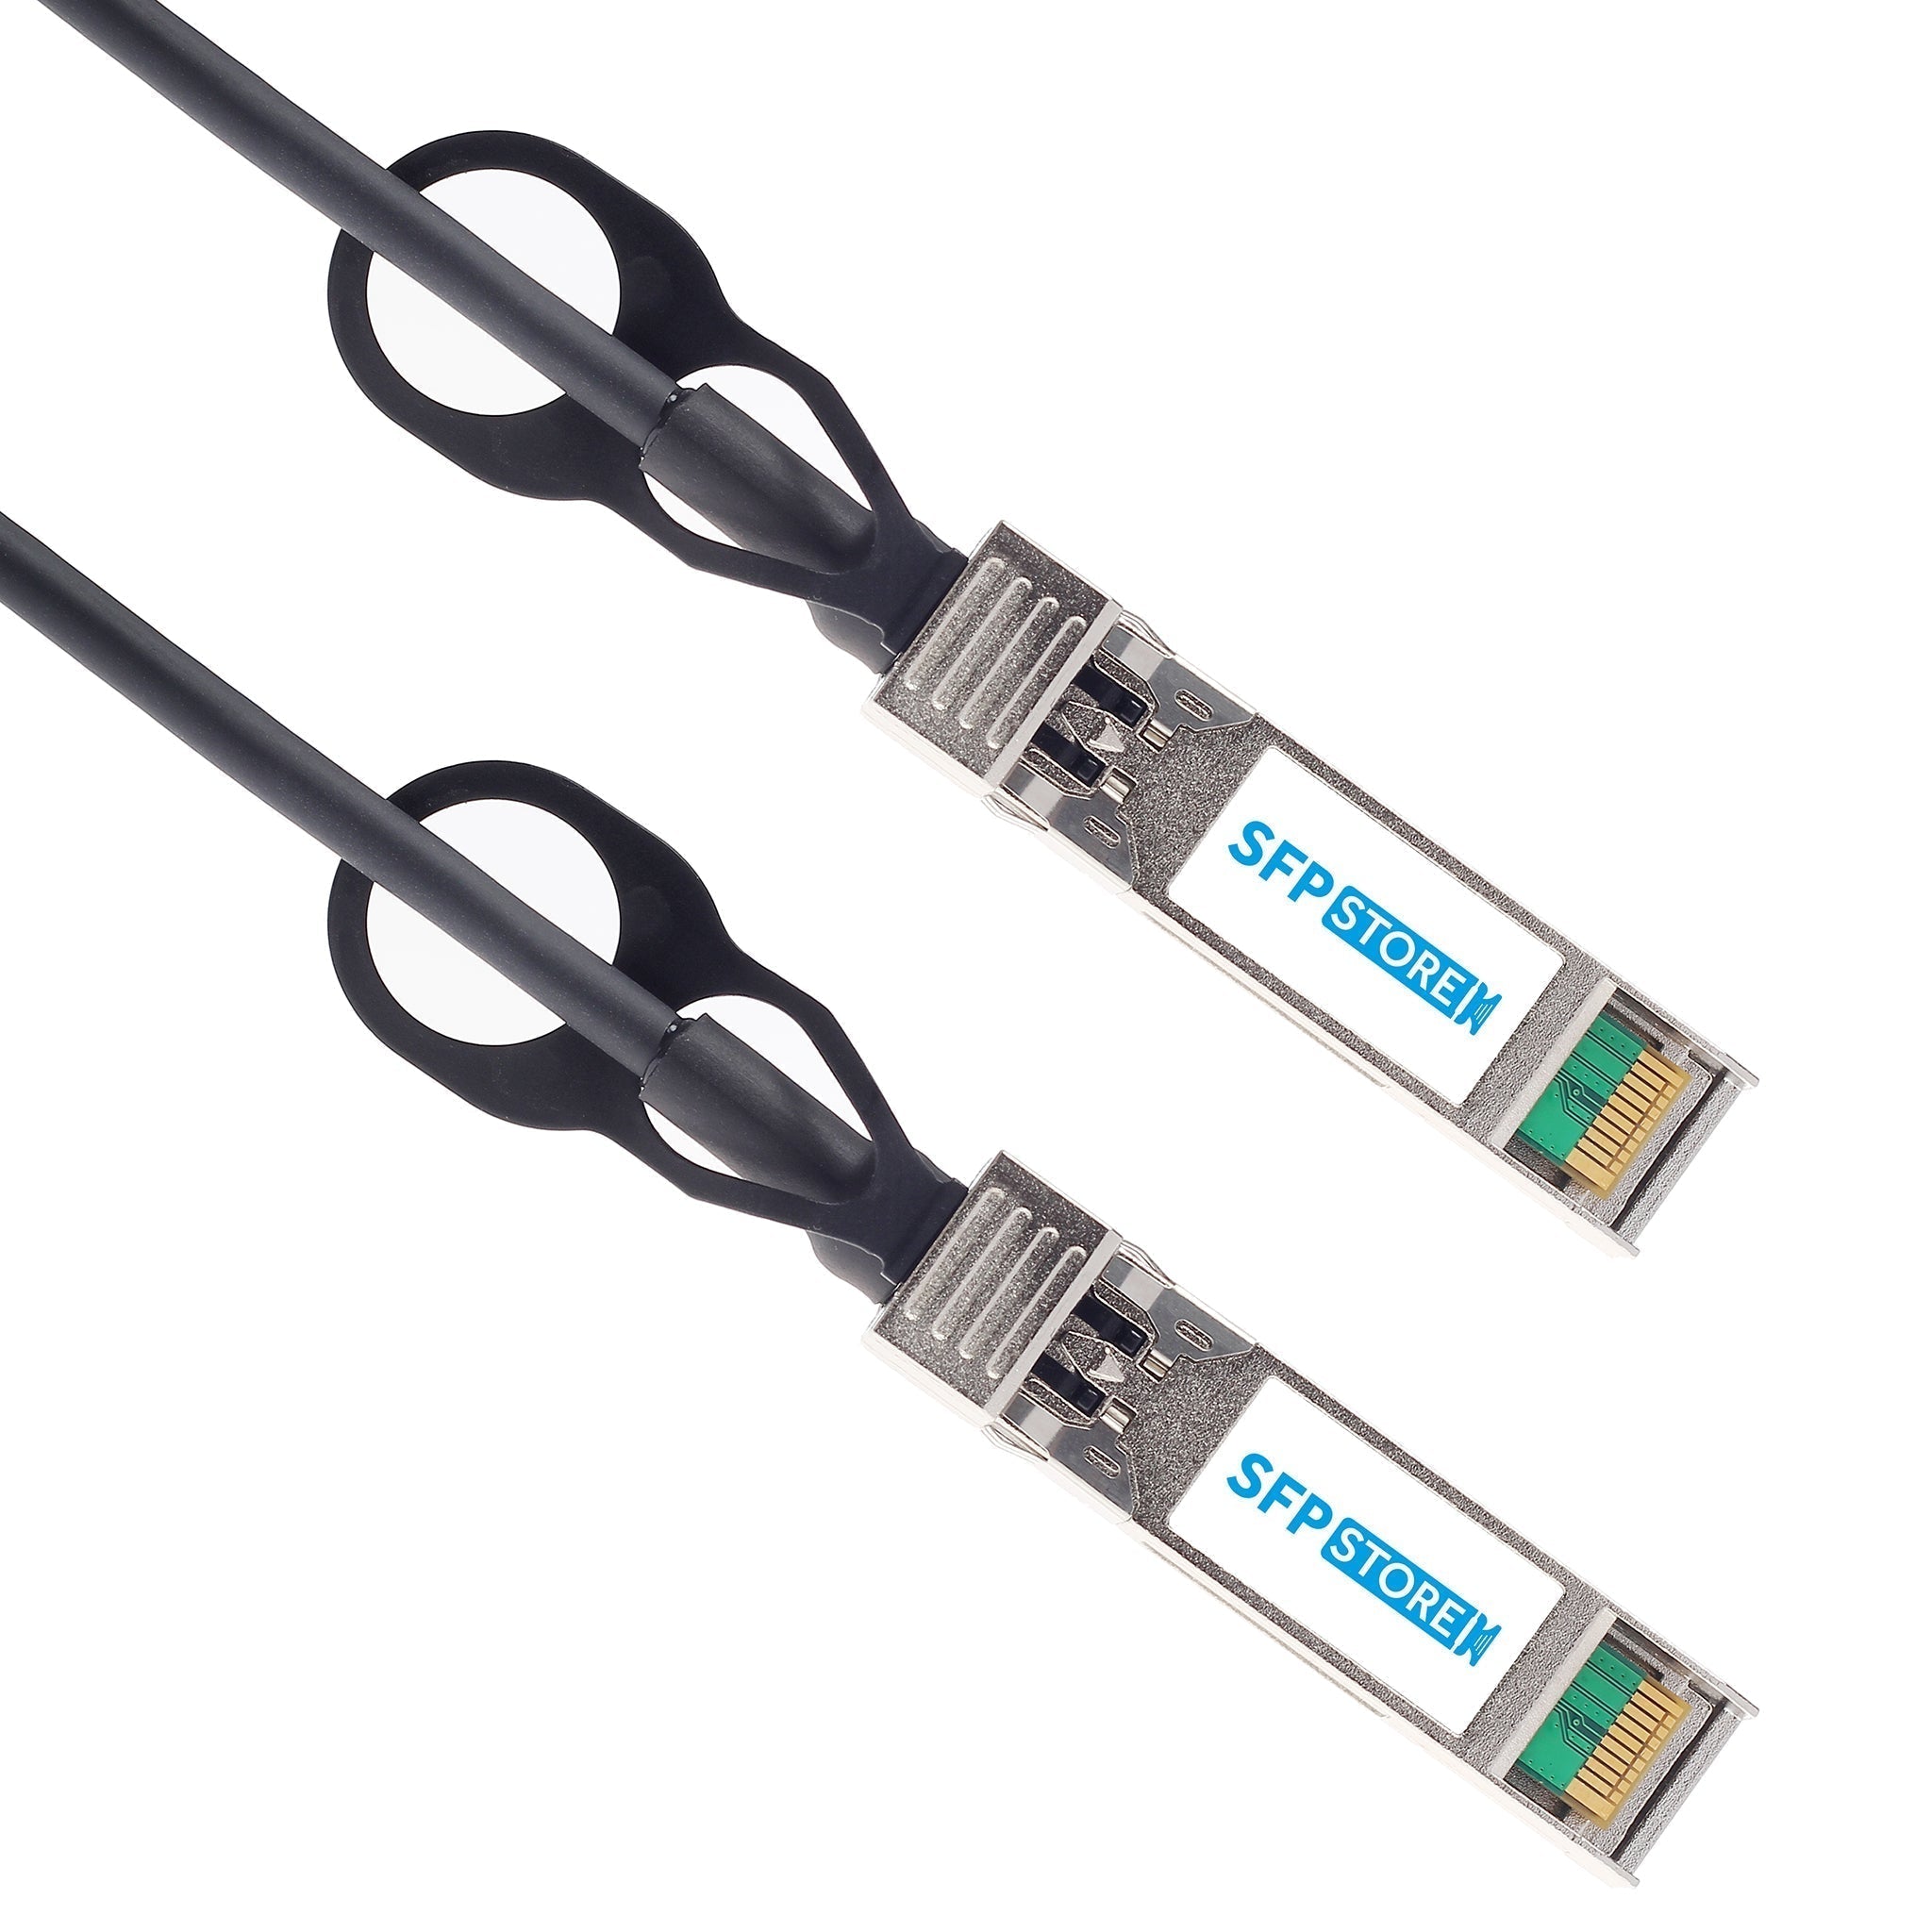 AA1403022-E6-C - 7m Avaya Nortel Compatible 10G SFP+ Passive Direct Attach Copper Twinax Cable